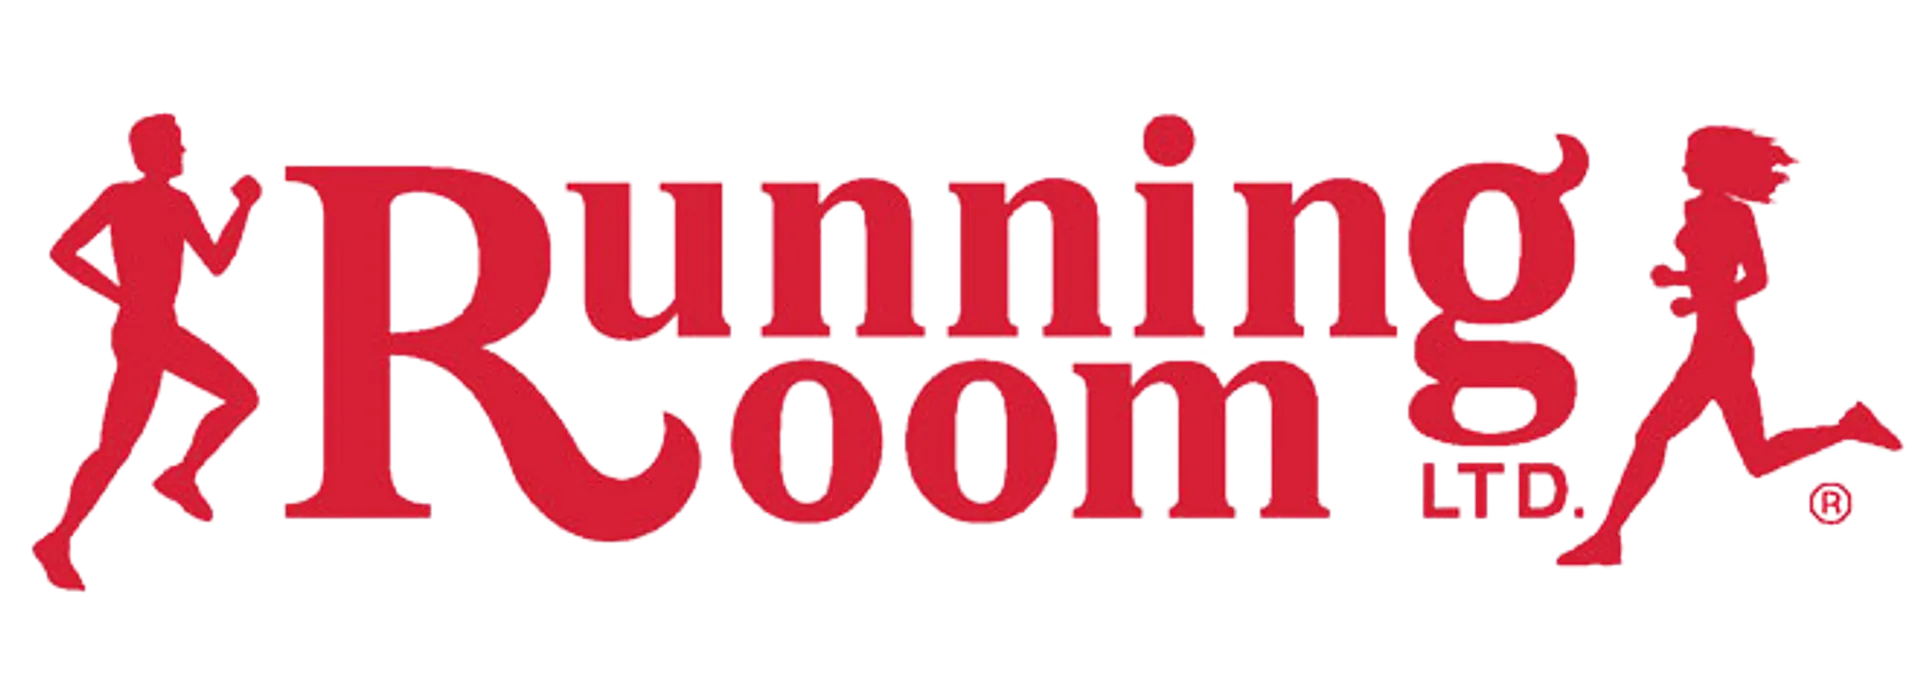 RUNNING ROOM logo